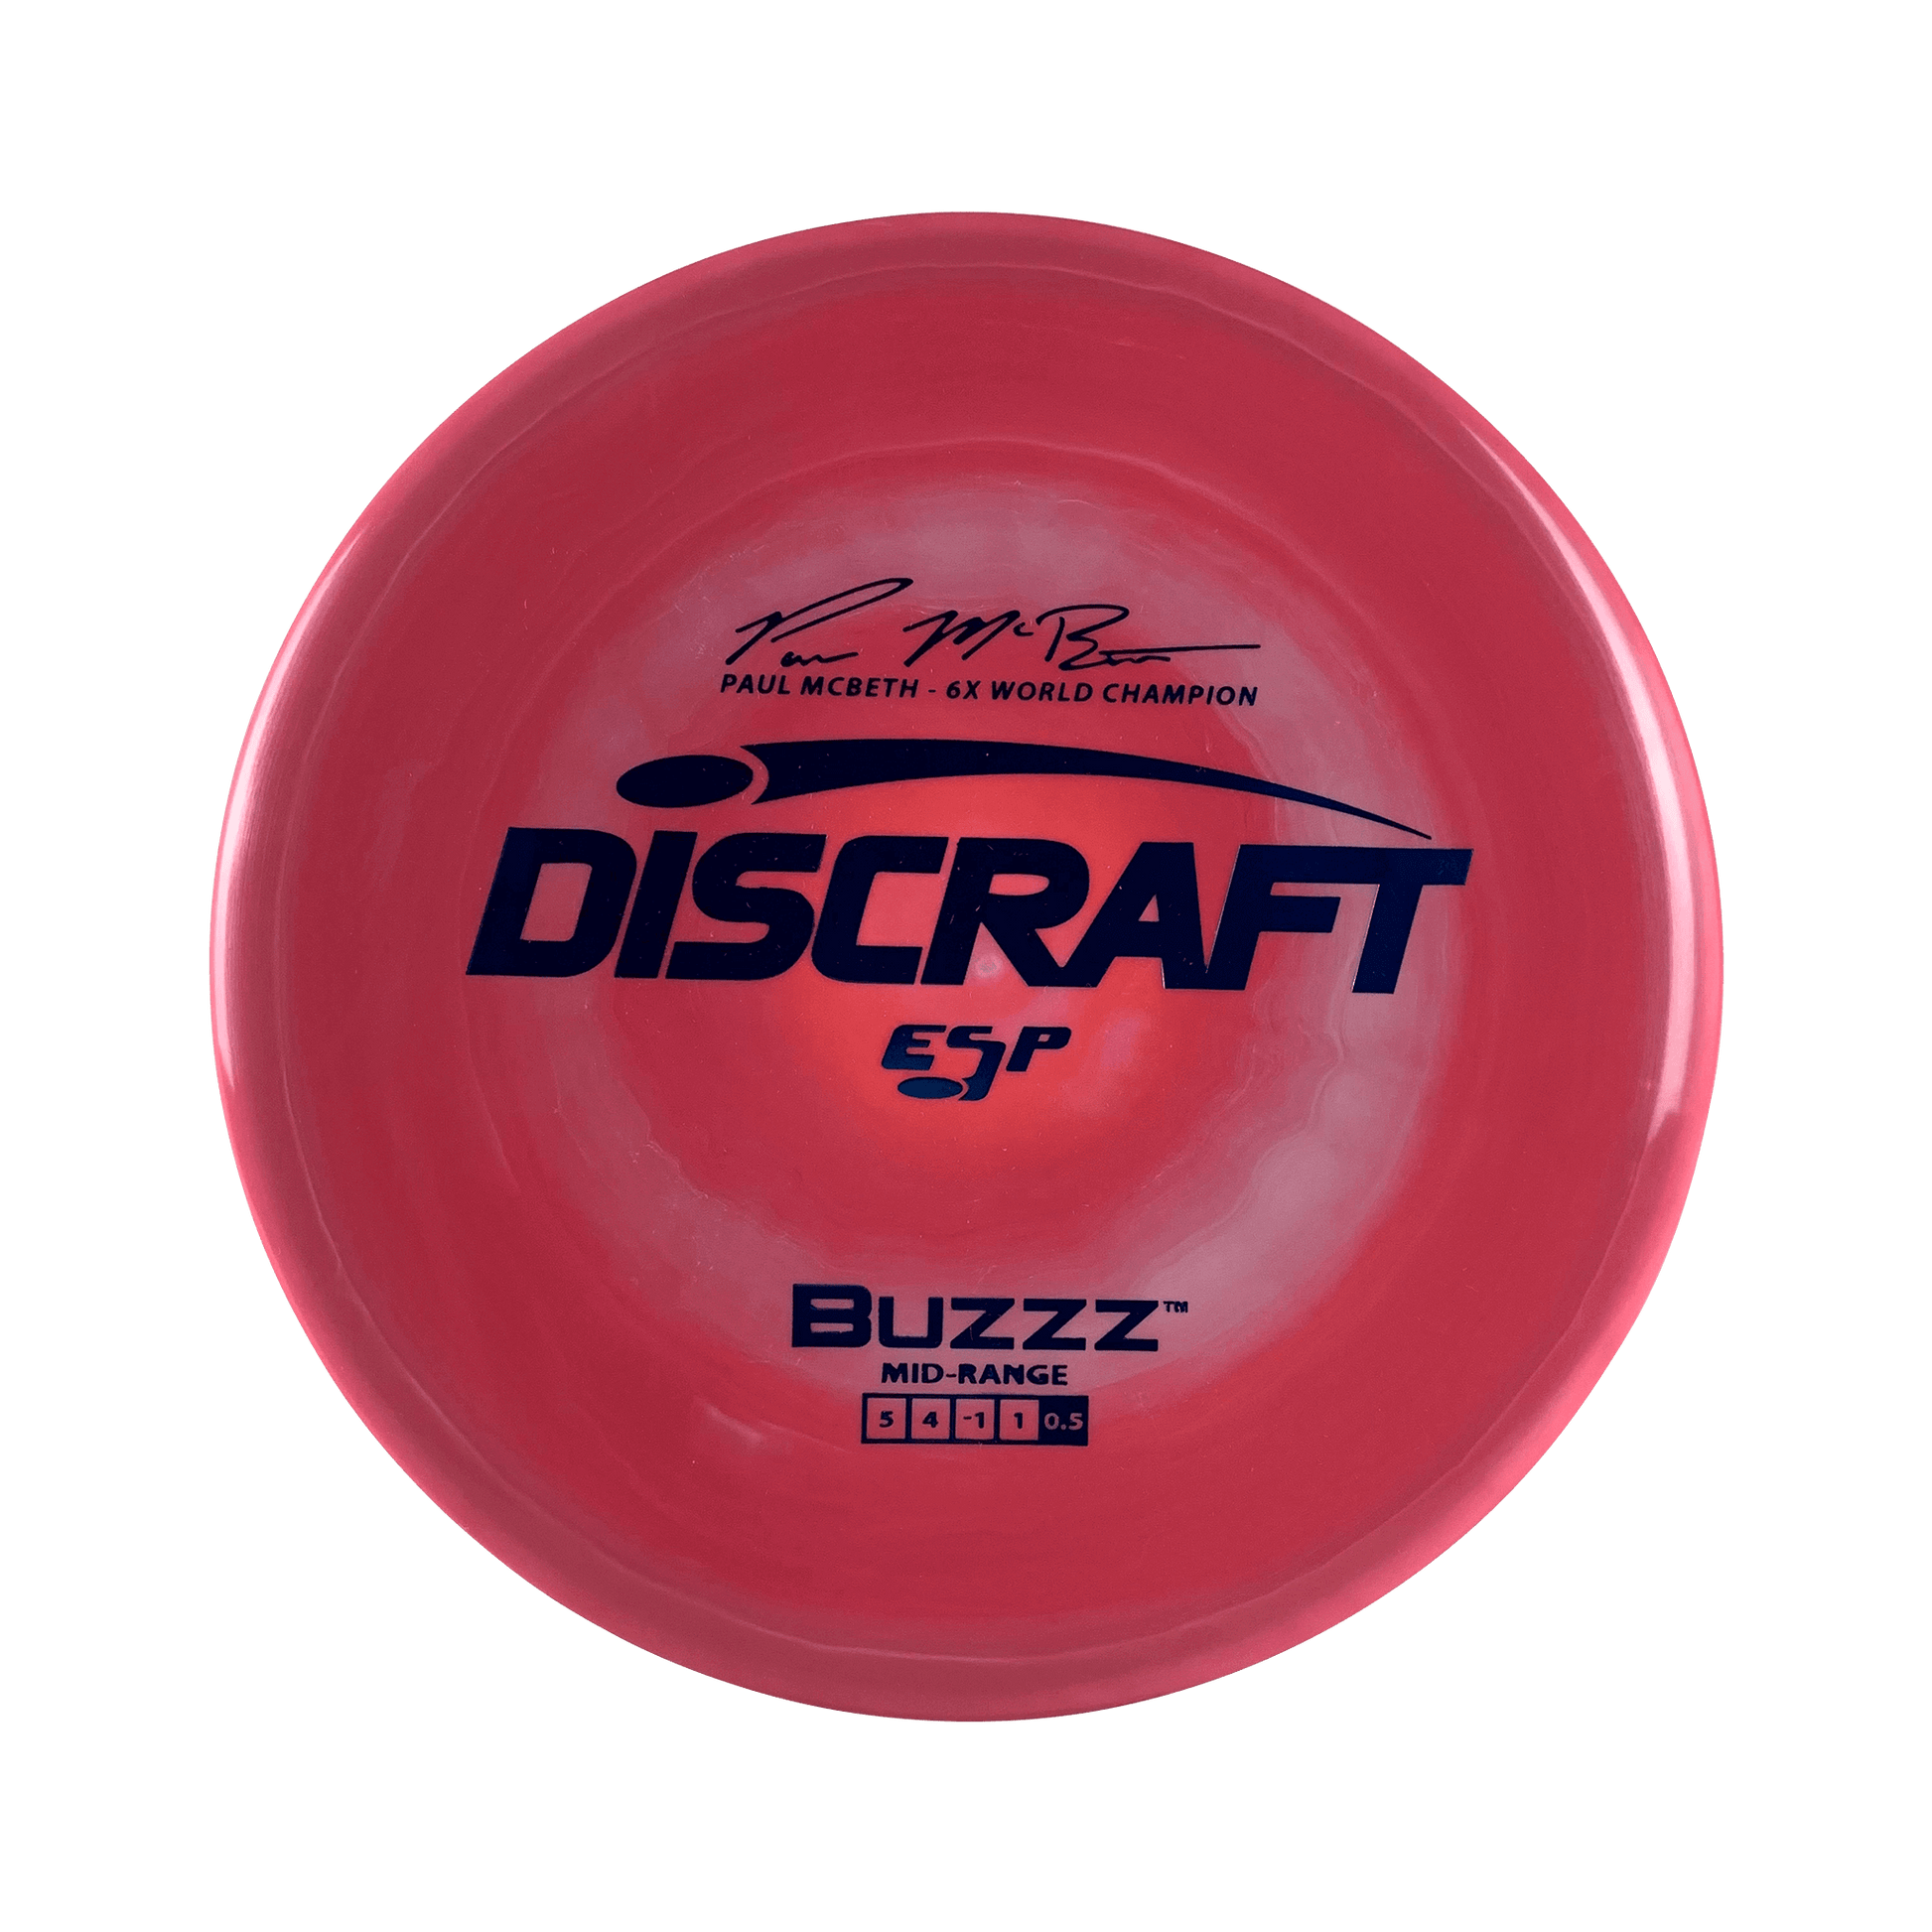 ESP Buzzz - Paul McBeth 6x Disc Discraft multi / red 173 